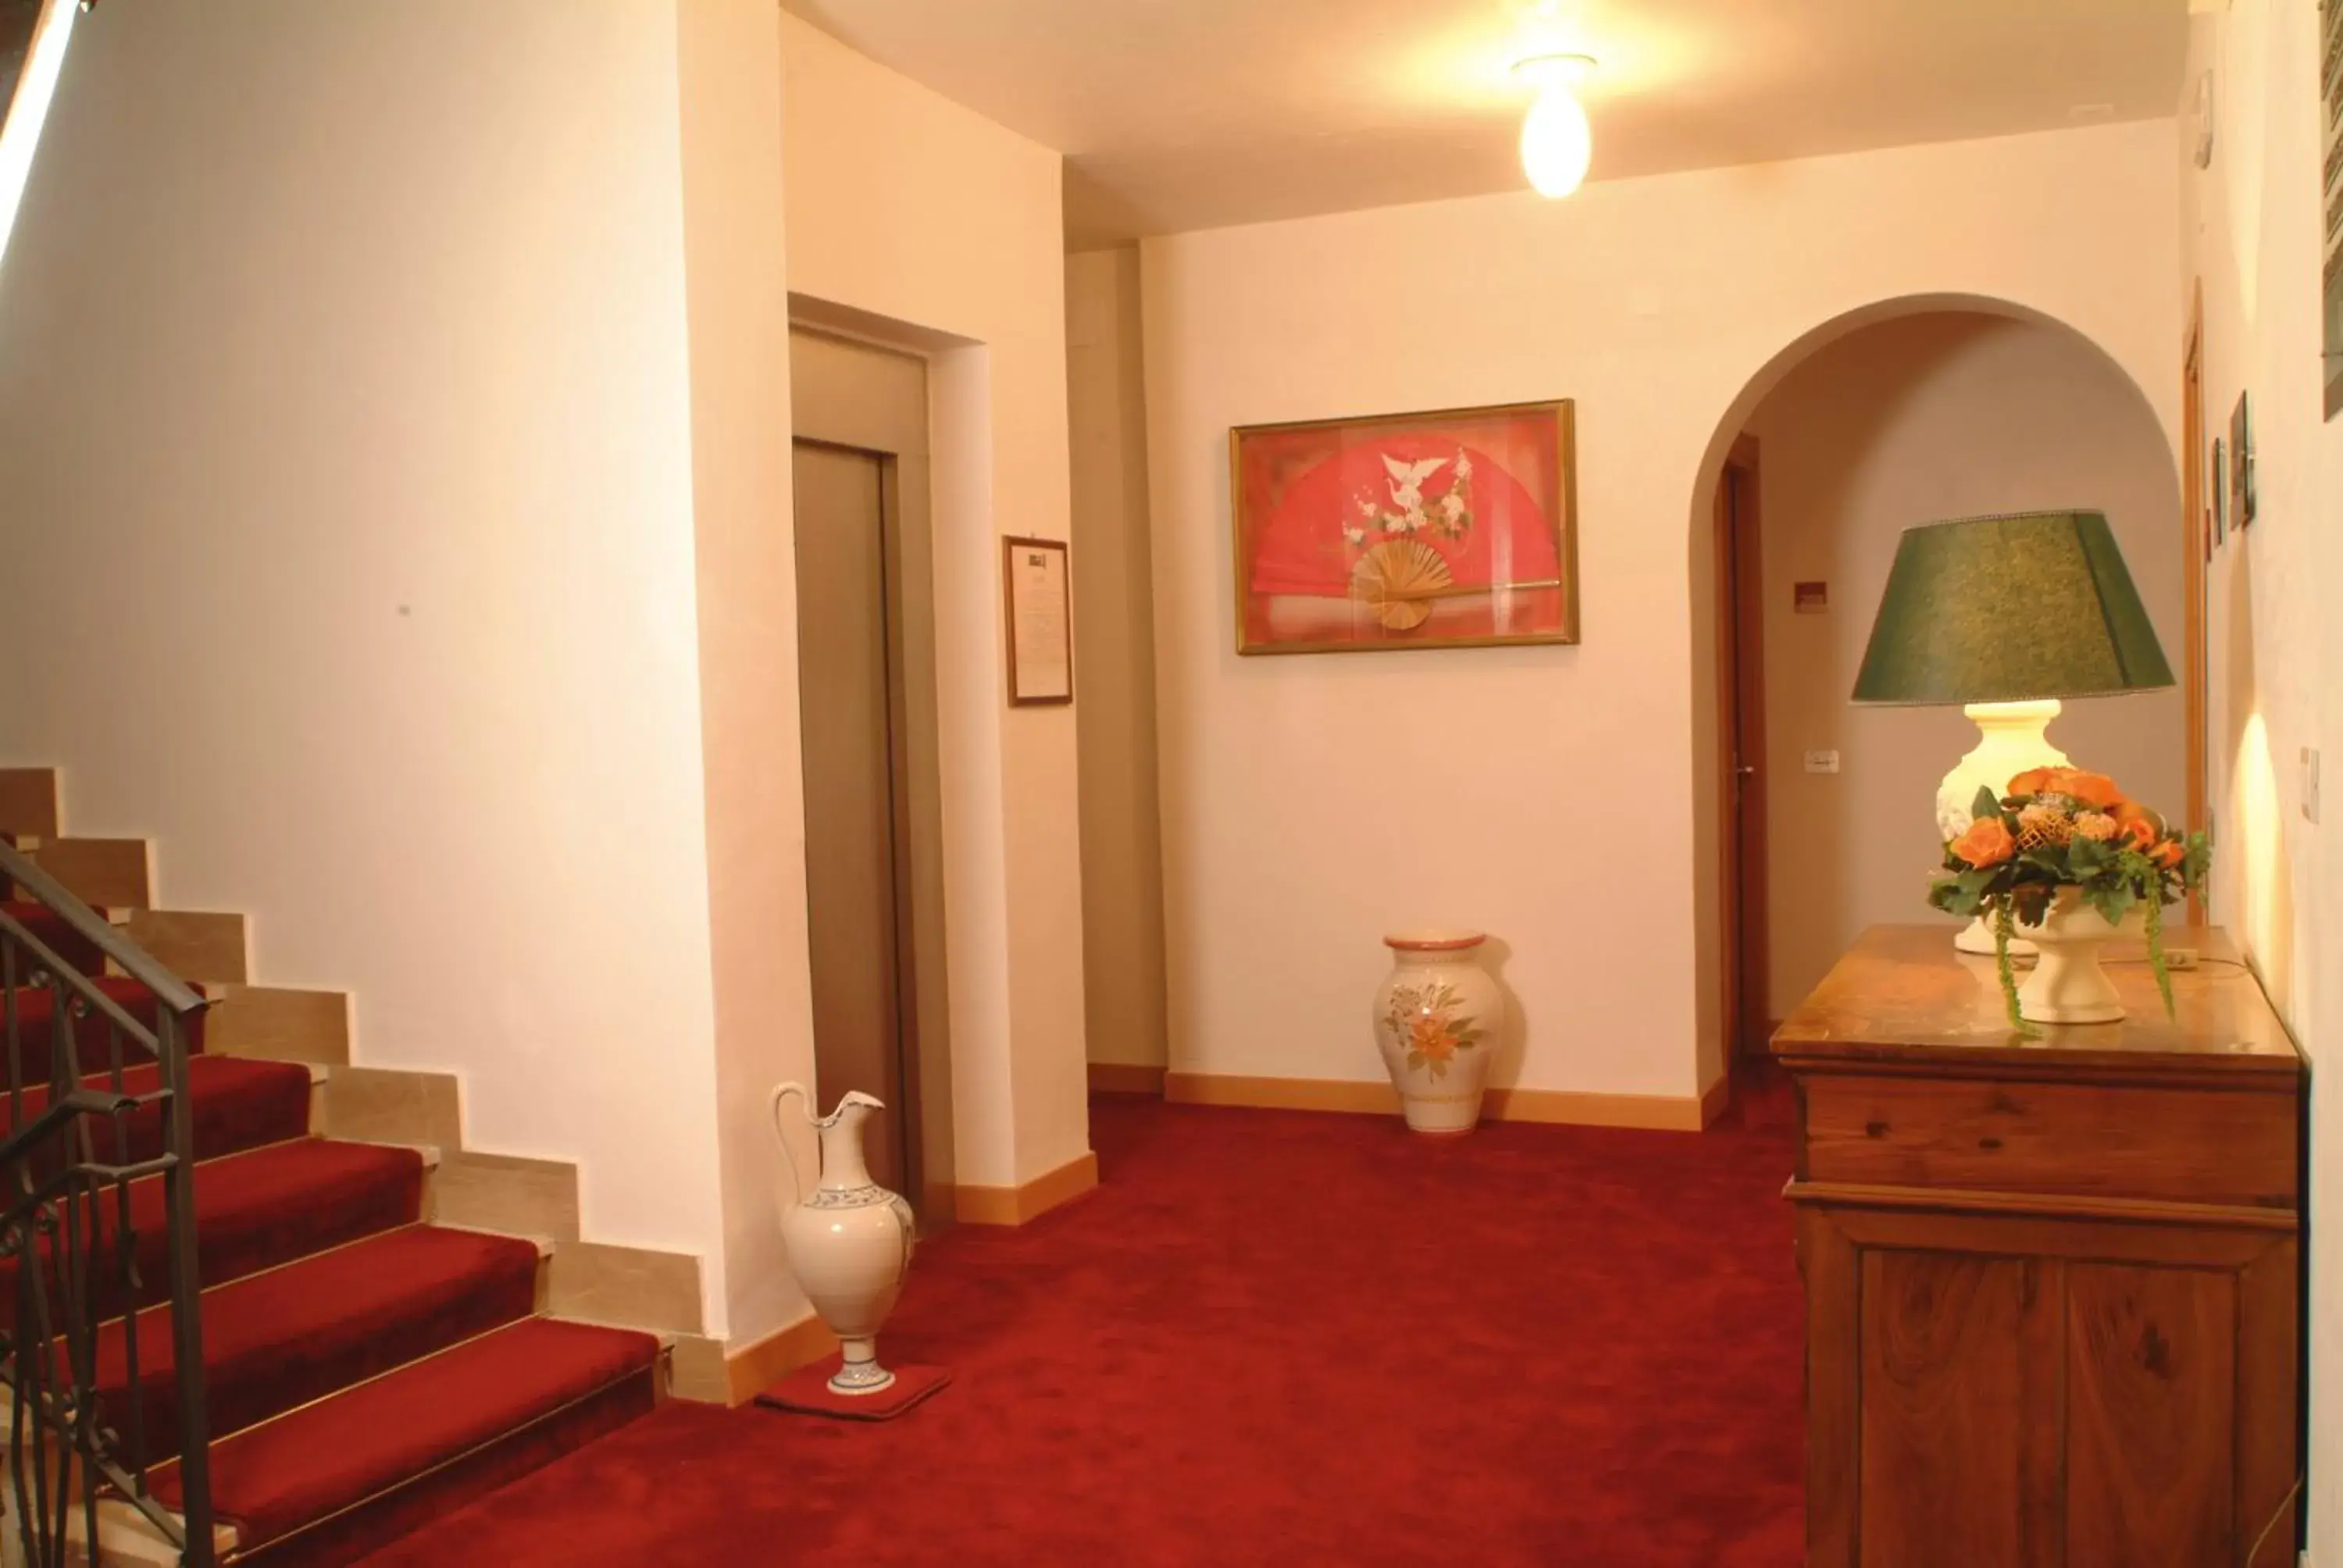 Lobby or reception in Hotel Degli Aranci